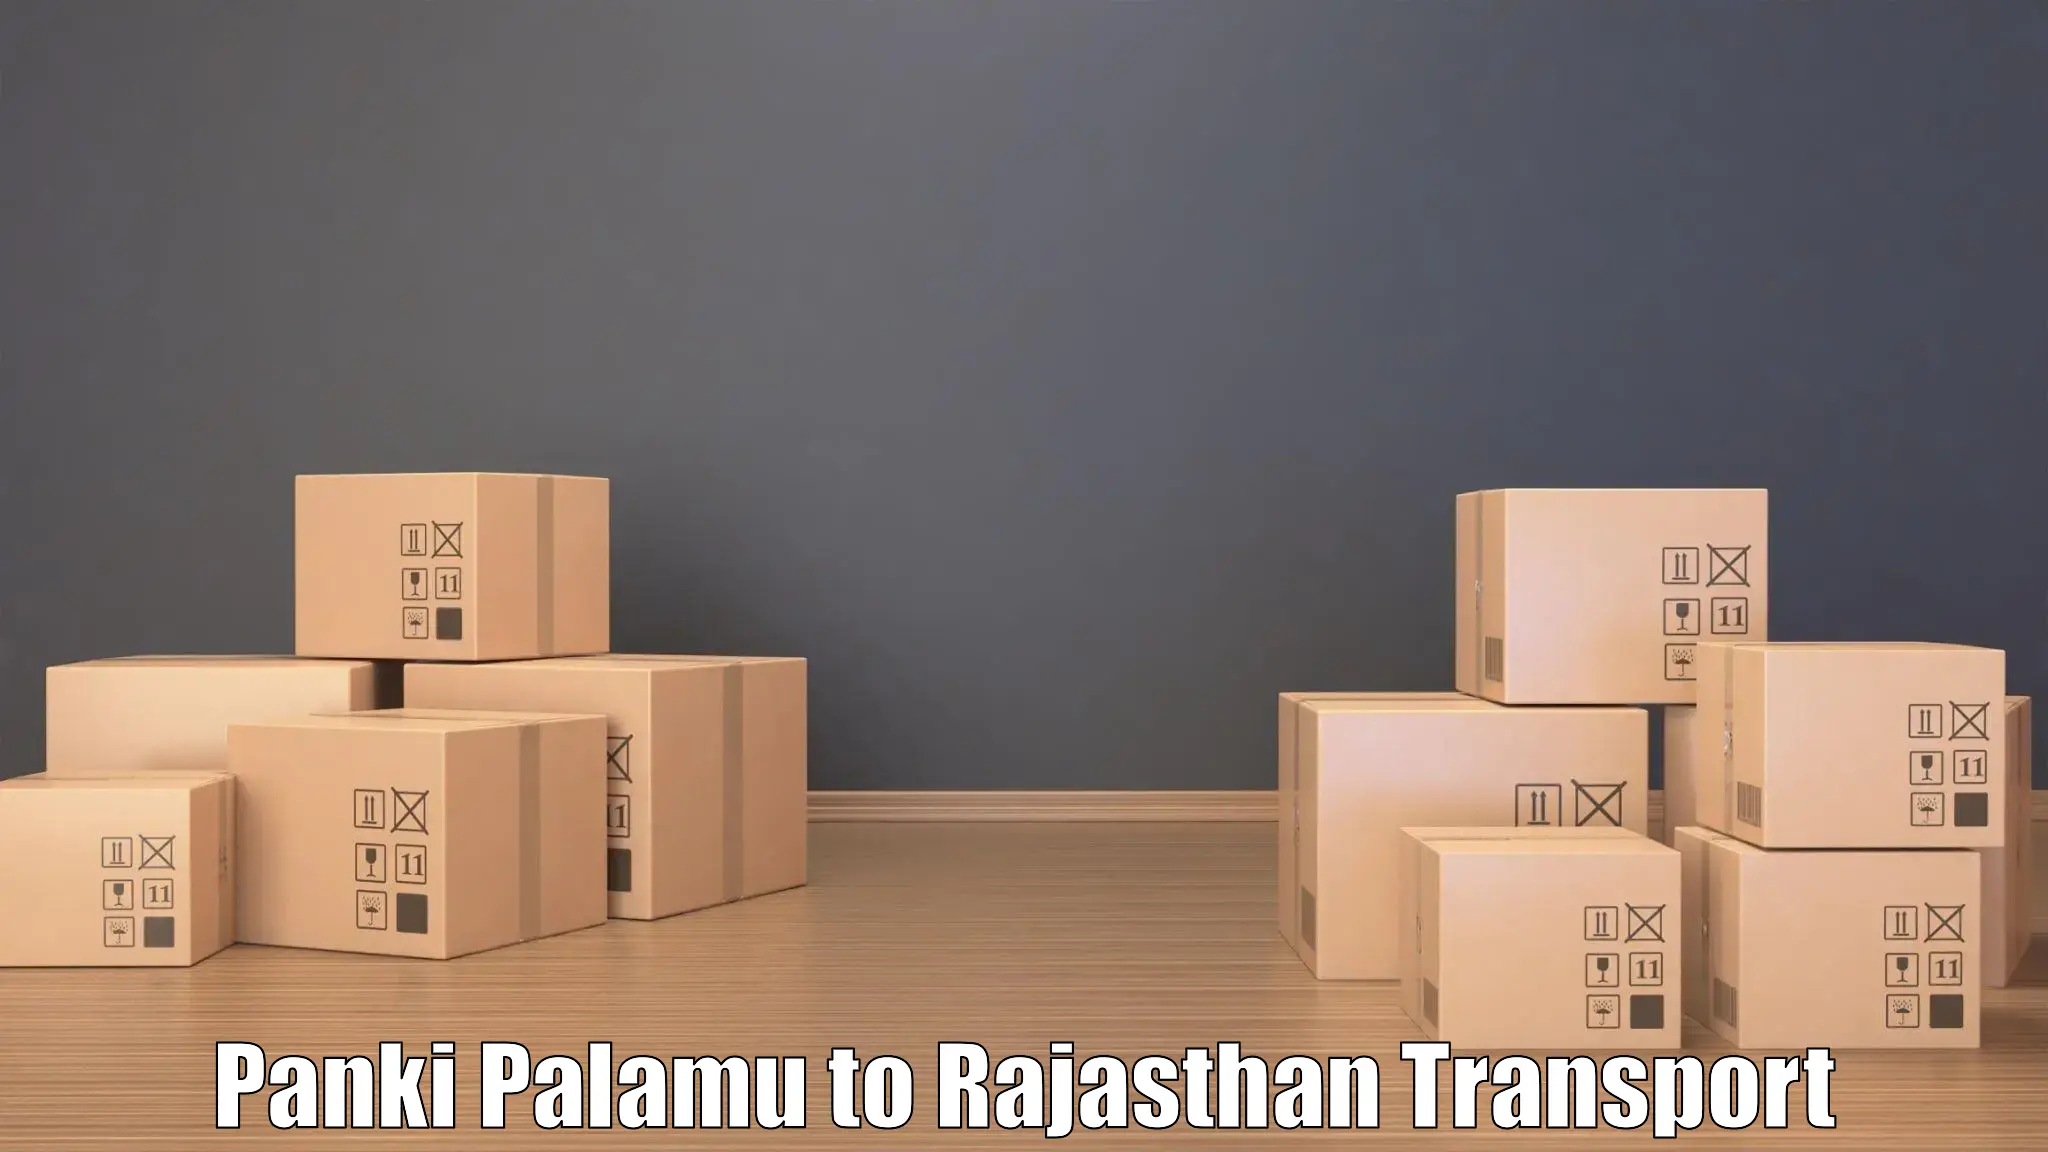 Daily parcel service transport in Panki Palamu to Kapasan